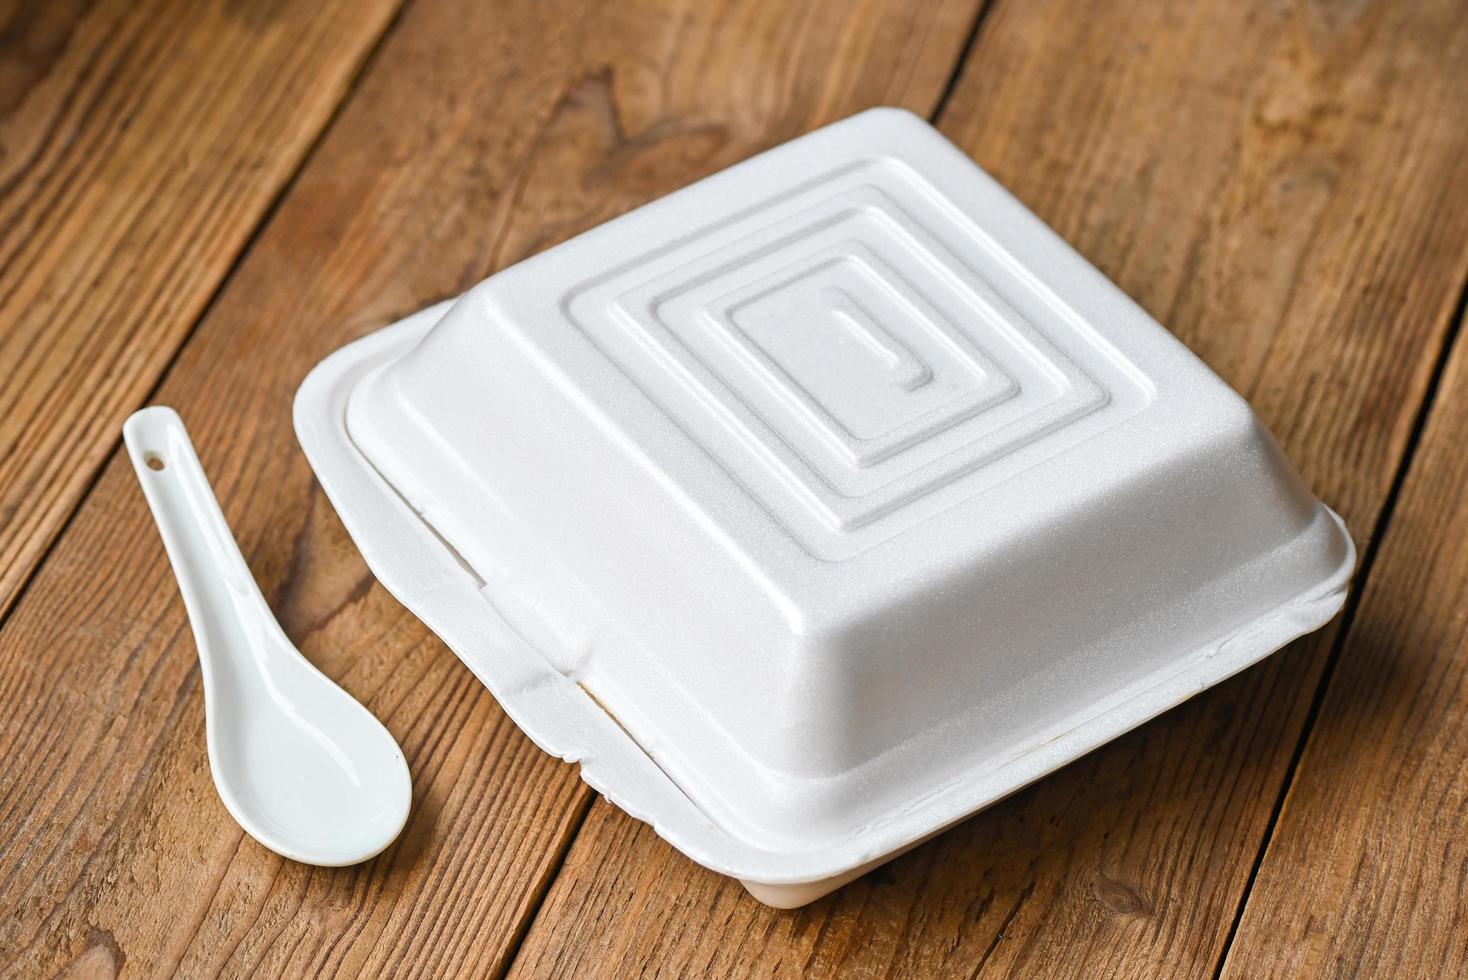 Lunchbox-Schaum, Essensbox zum Mitnehmen, Straßenessen - gefährlich für die Gesundheit Abfall Müllschaum Lebensmittelkonzept foto